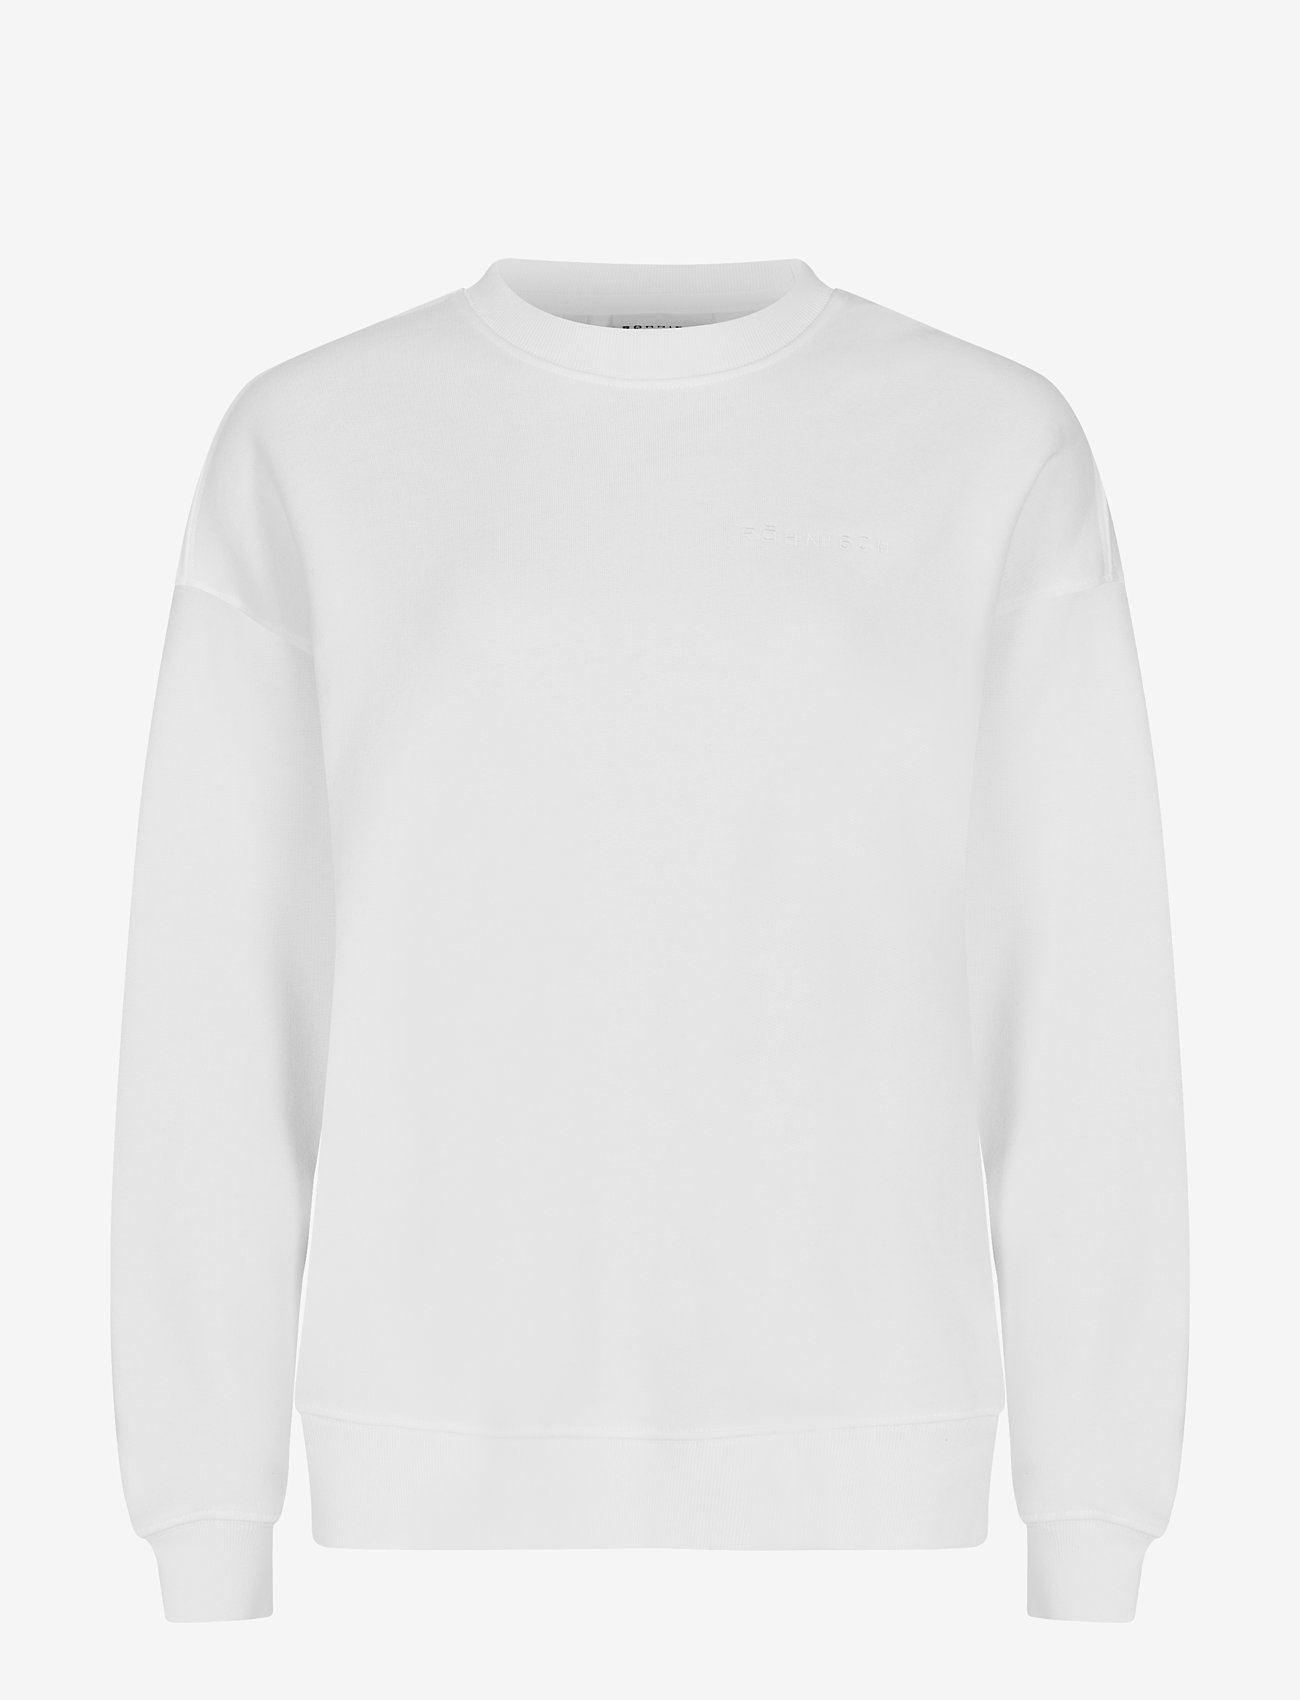 Röhnisch - Iconic Sweatshirt - sweatshirts - white - 0